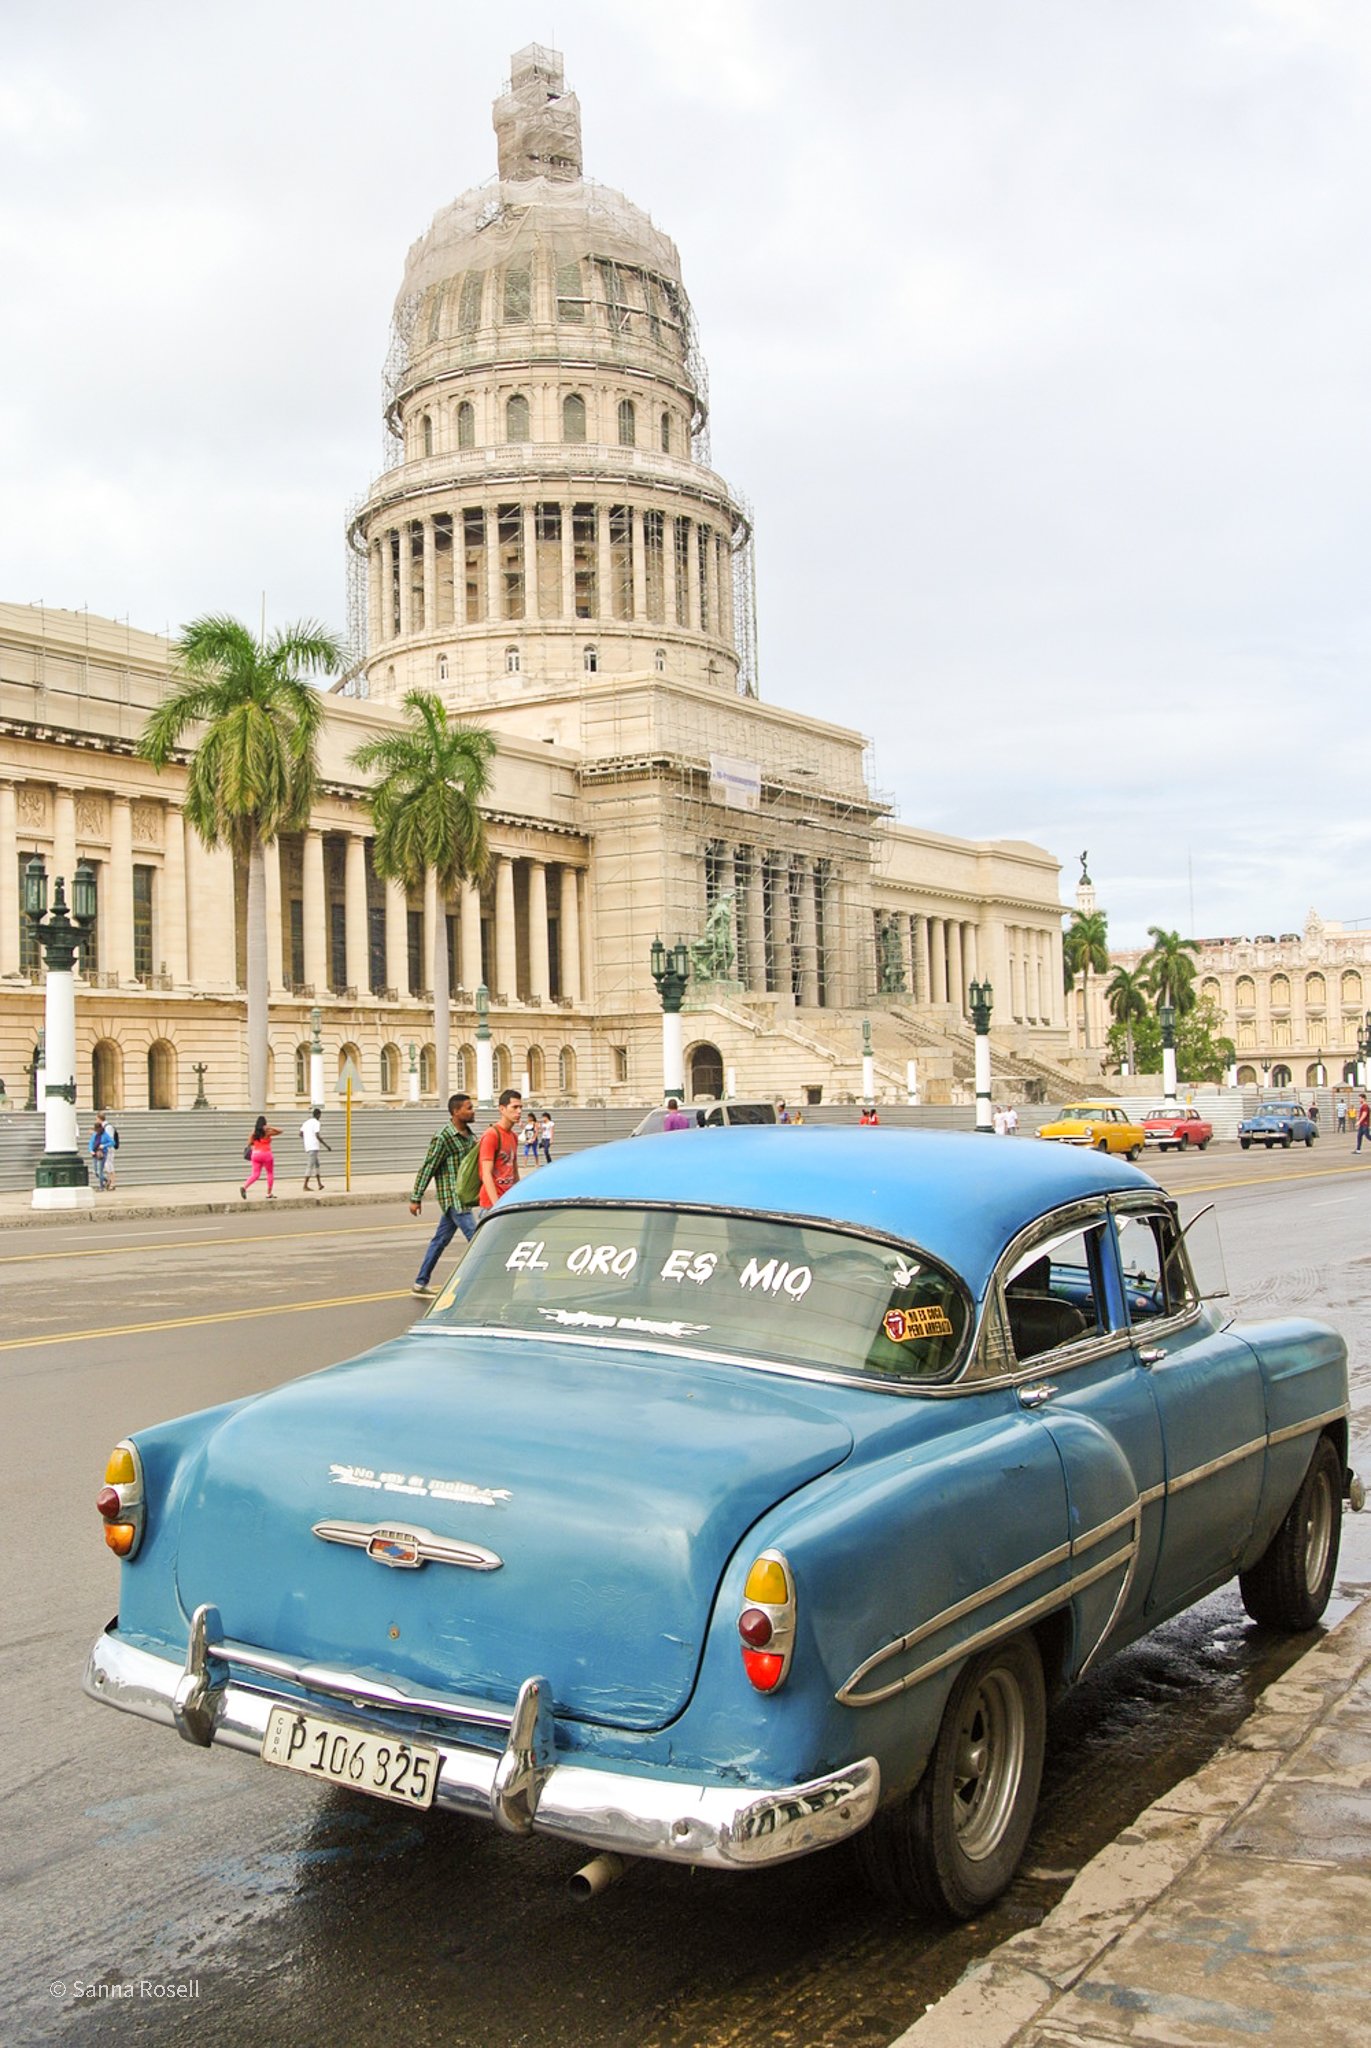 hyra bil på Kuba-5.jpg